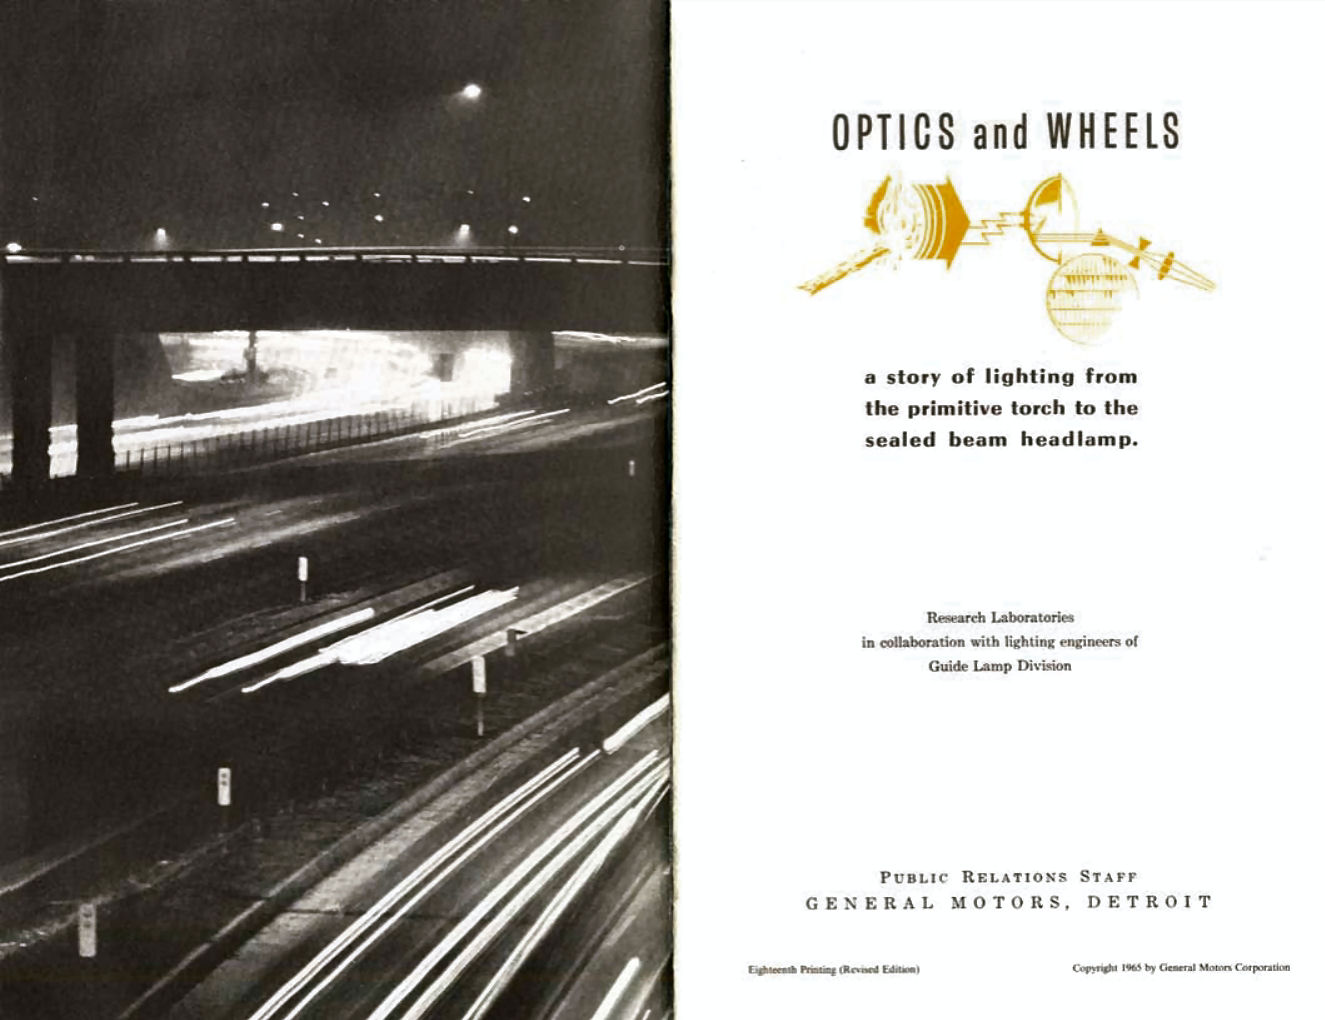 n_1965-Optics and Wheels-00a-01.jpg